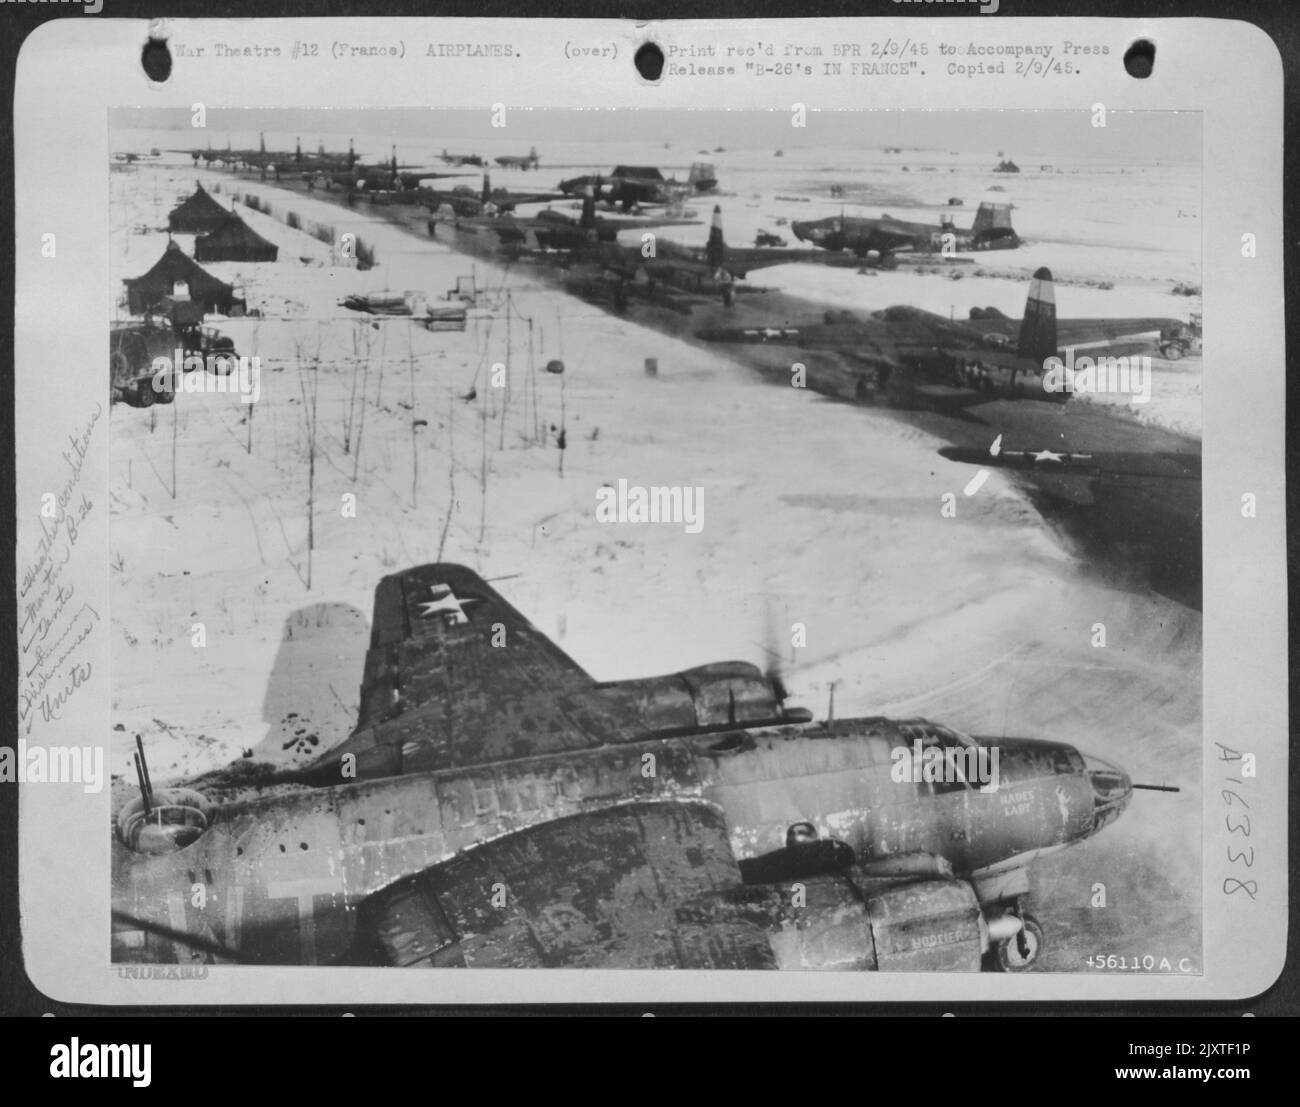 B-26 en FRANCE, aligné nez à queue sur une piste glacée sur un champ enneigé en France, les Maraudeurs de la neuvième Force aérienne B-26 du Groupe Bomb 323 sont prêts à décoller pour une autre attaque contre des ponts, des routes, des chemins de fer et d'autres sources d'approvisionnement et Banque D'Images